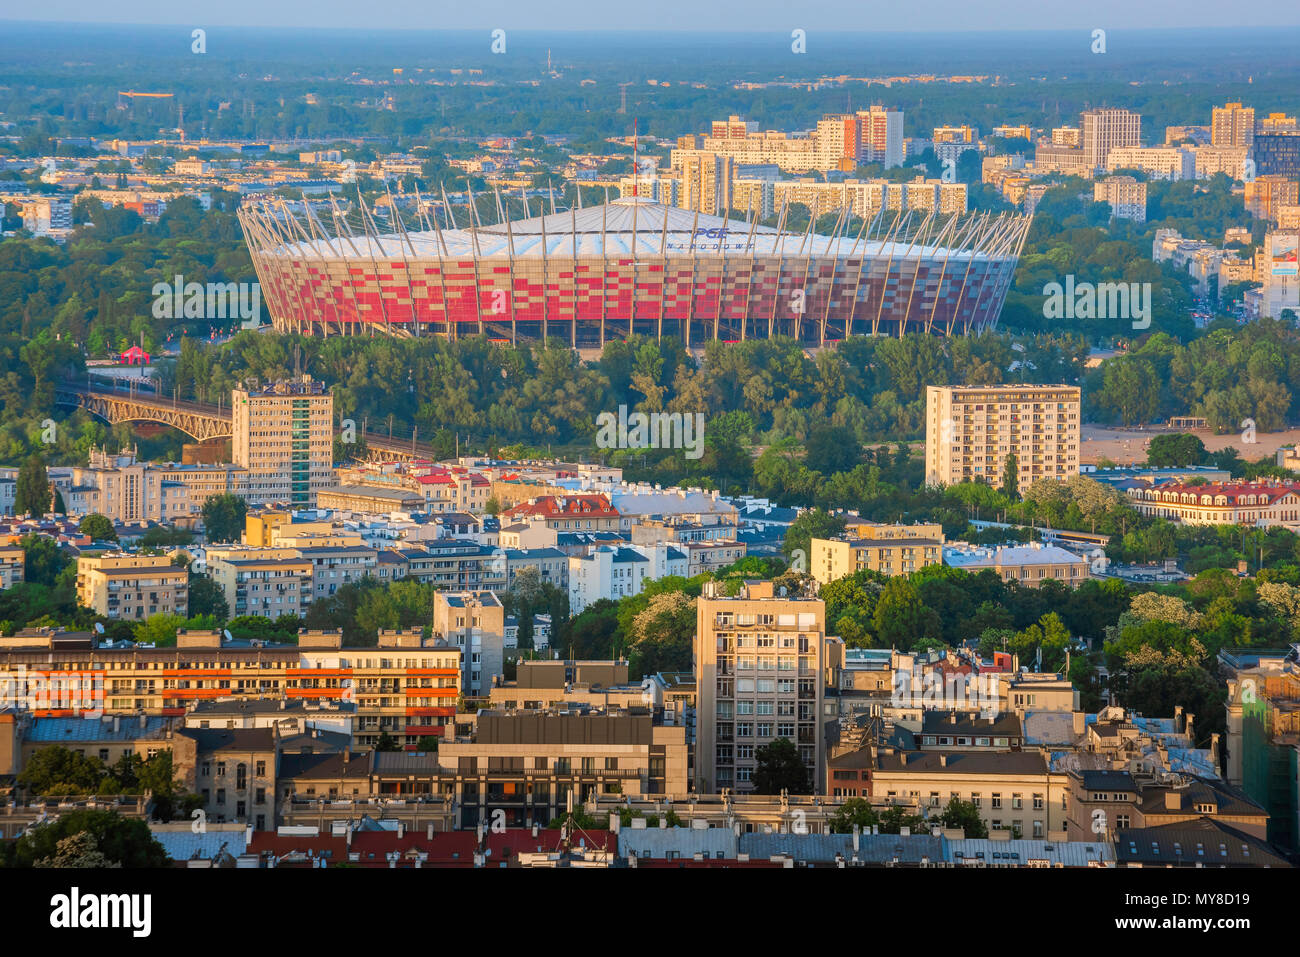 Football stadium Poland, view of the Polish national football stadium (Stadion Narodowy) in the Praga district of Warsaw, Poland. Stock Photo